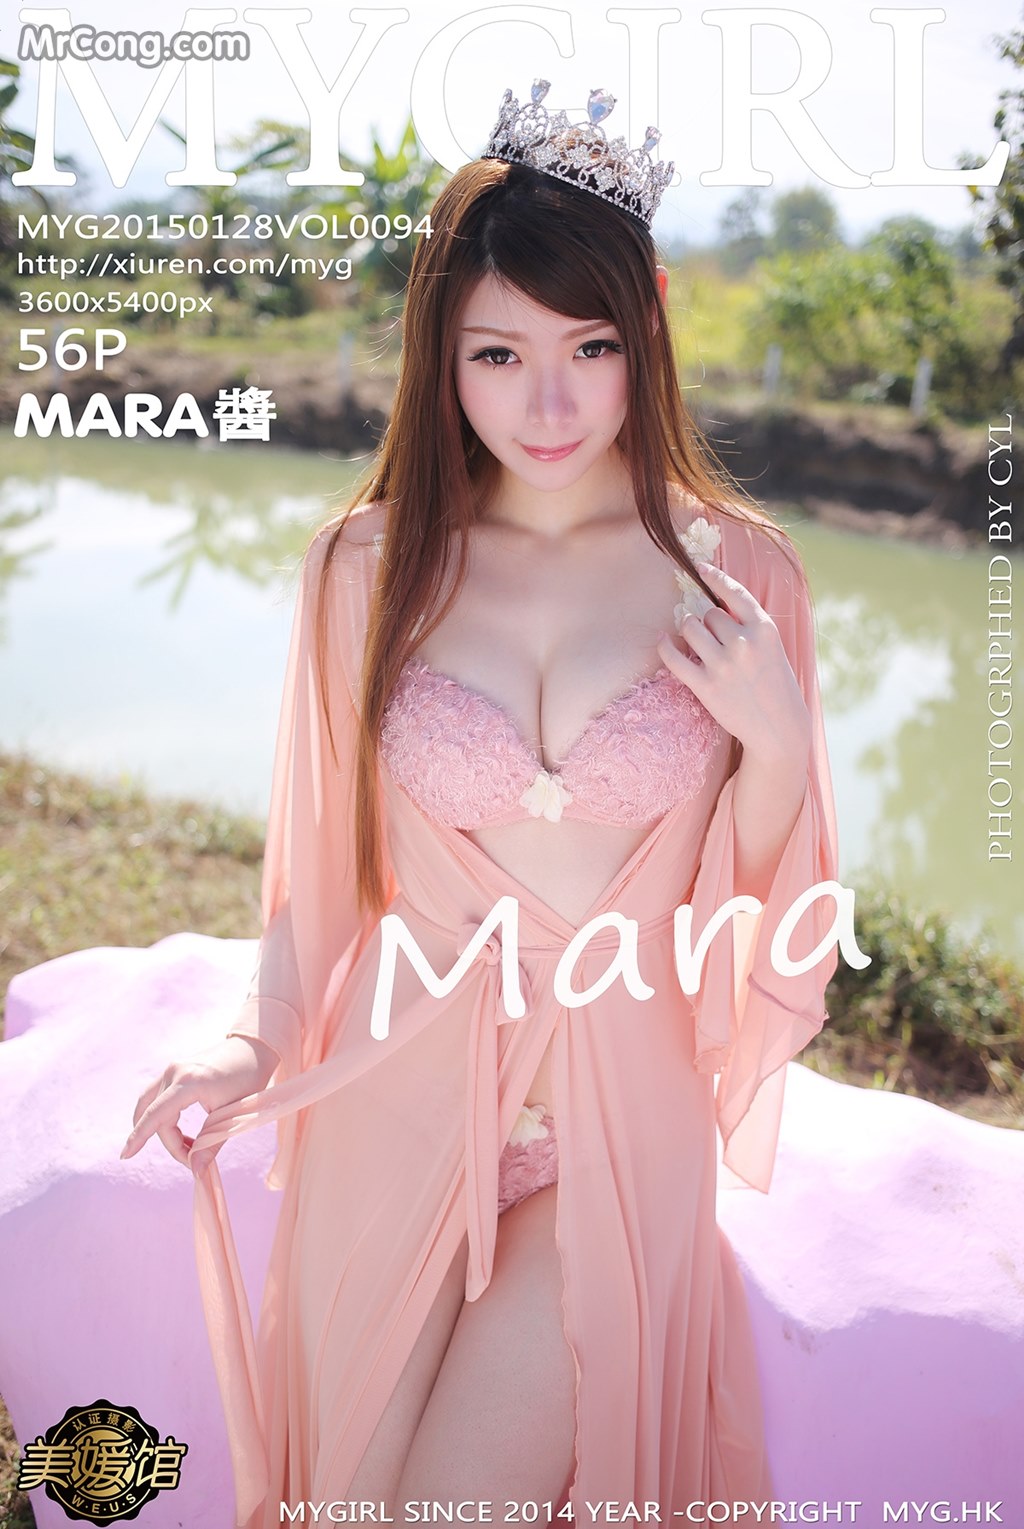 MyGirl Vol.094: Model Mara Jiang (Mara 酱) (57 photos) photo 1-0